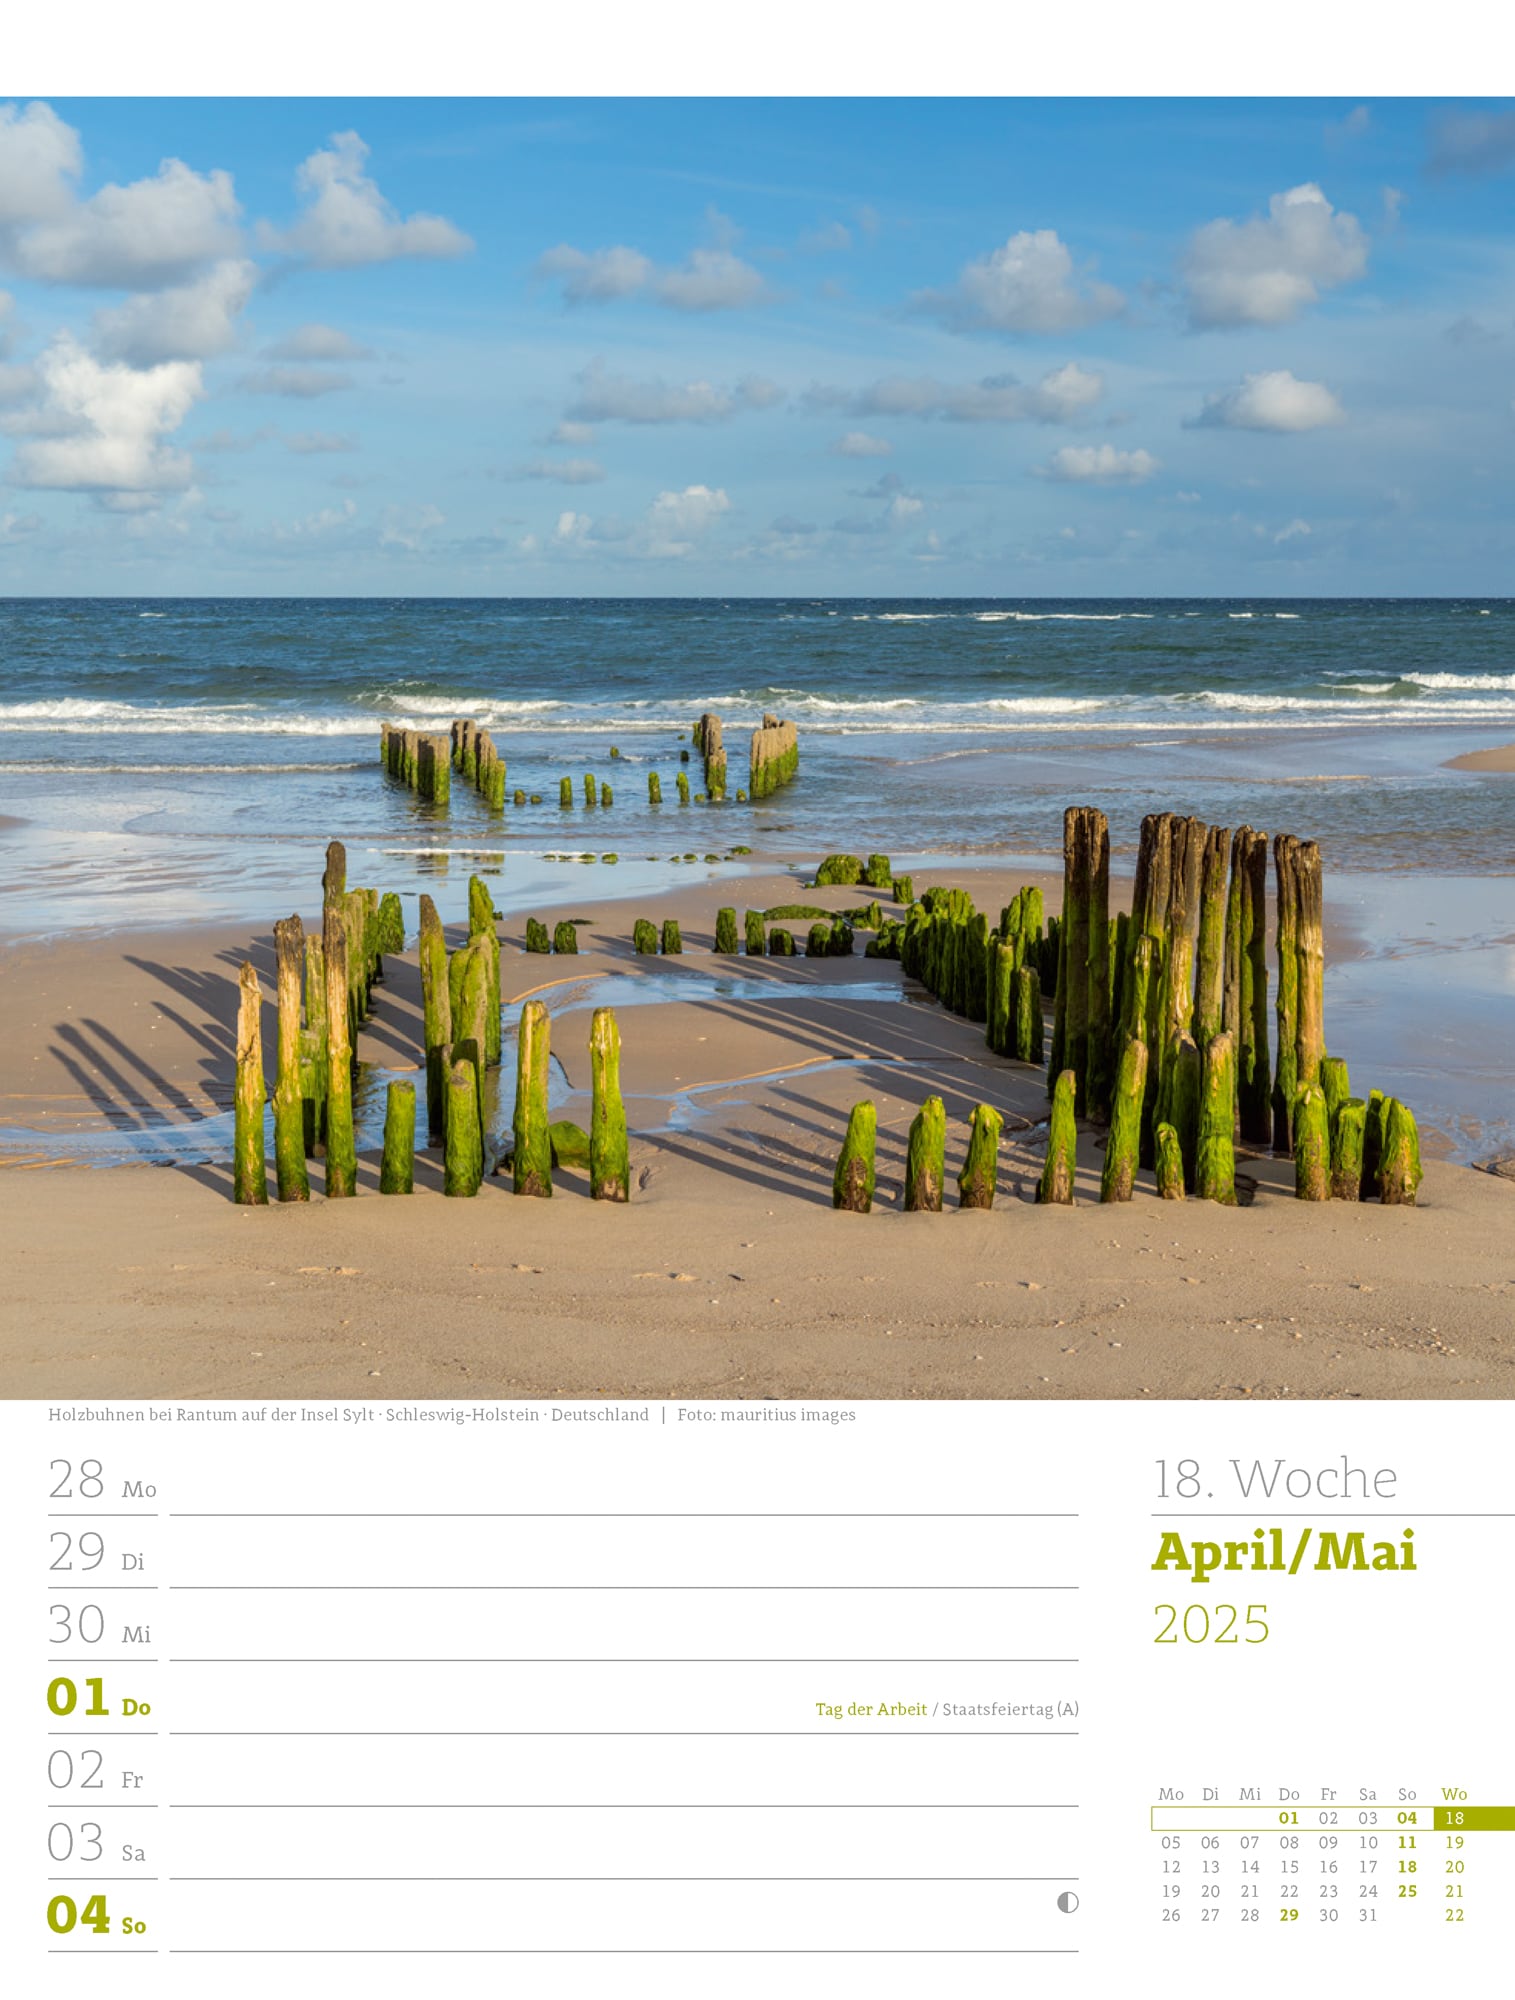 Ackermann Calendar At the Seaside 2025 - Weekly Planner - Inside View 21